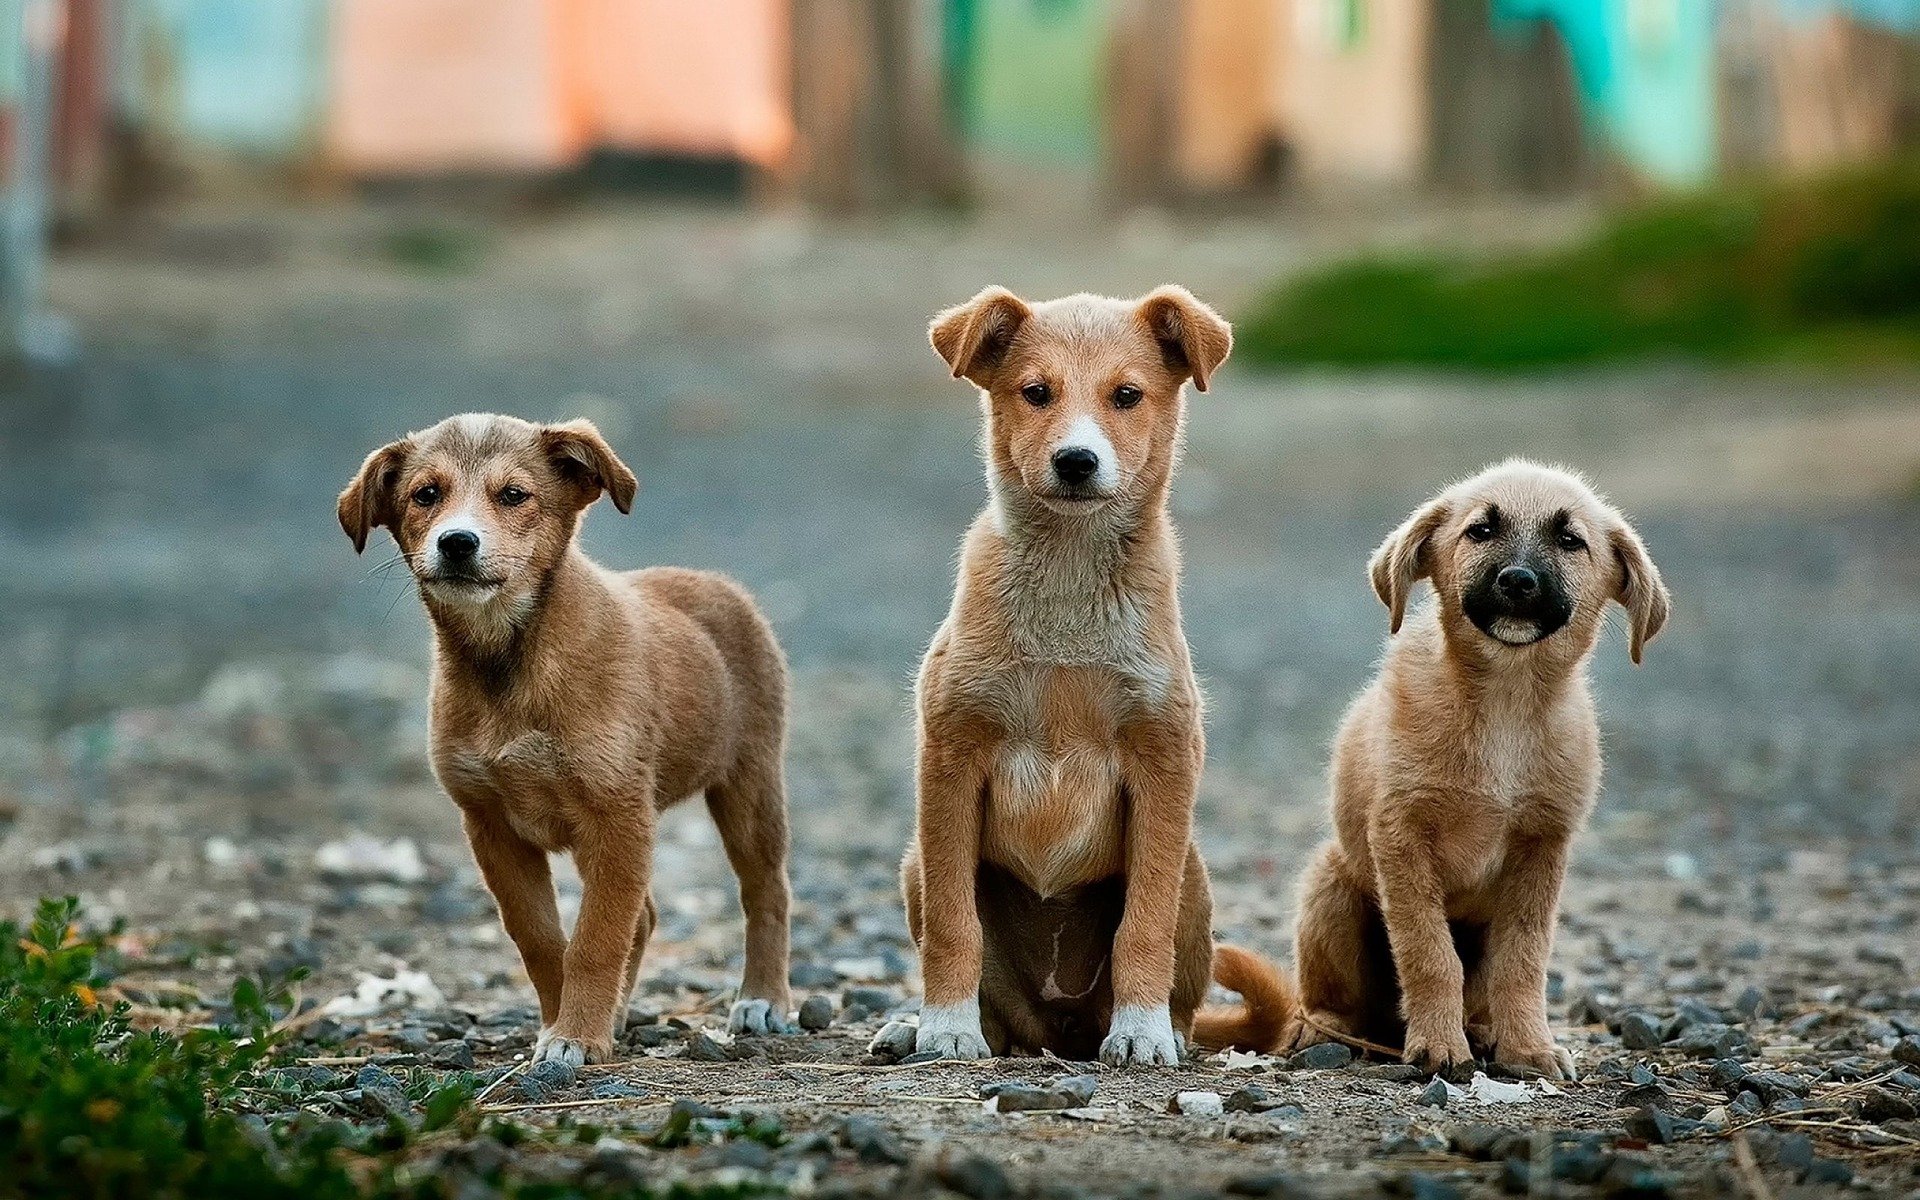 Cerco persone interessate ad investire in un progetto di asilo per cani